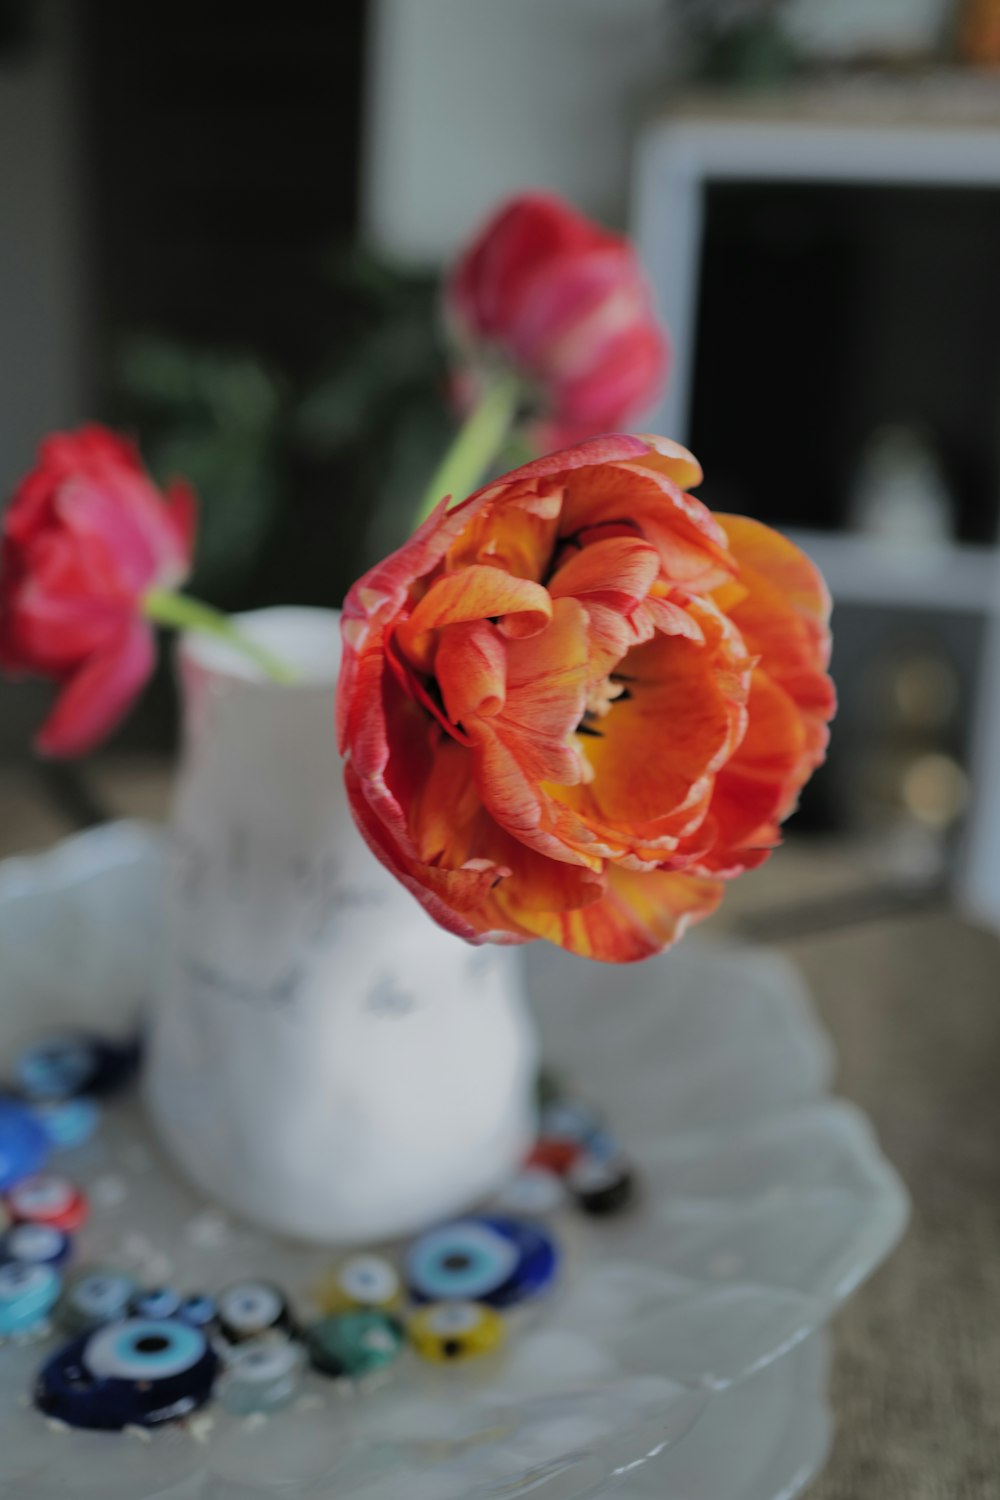 テーブルの上に赤い花でいっぱいの白い花瓶